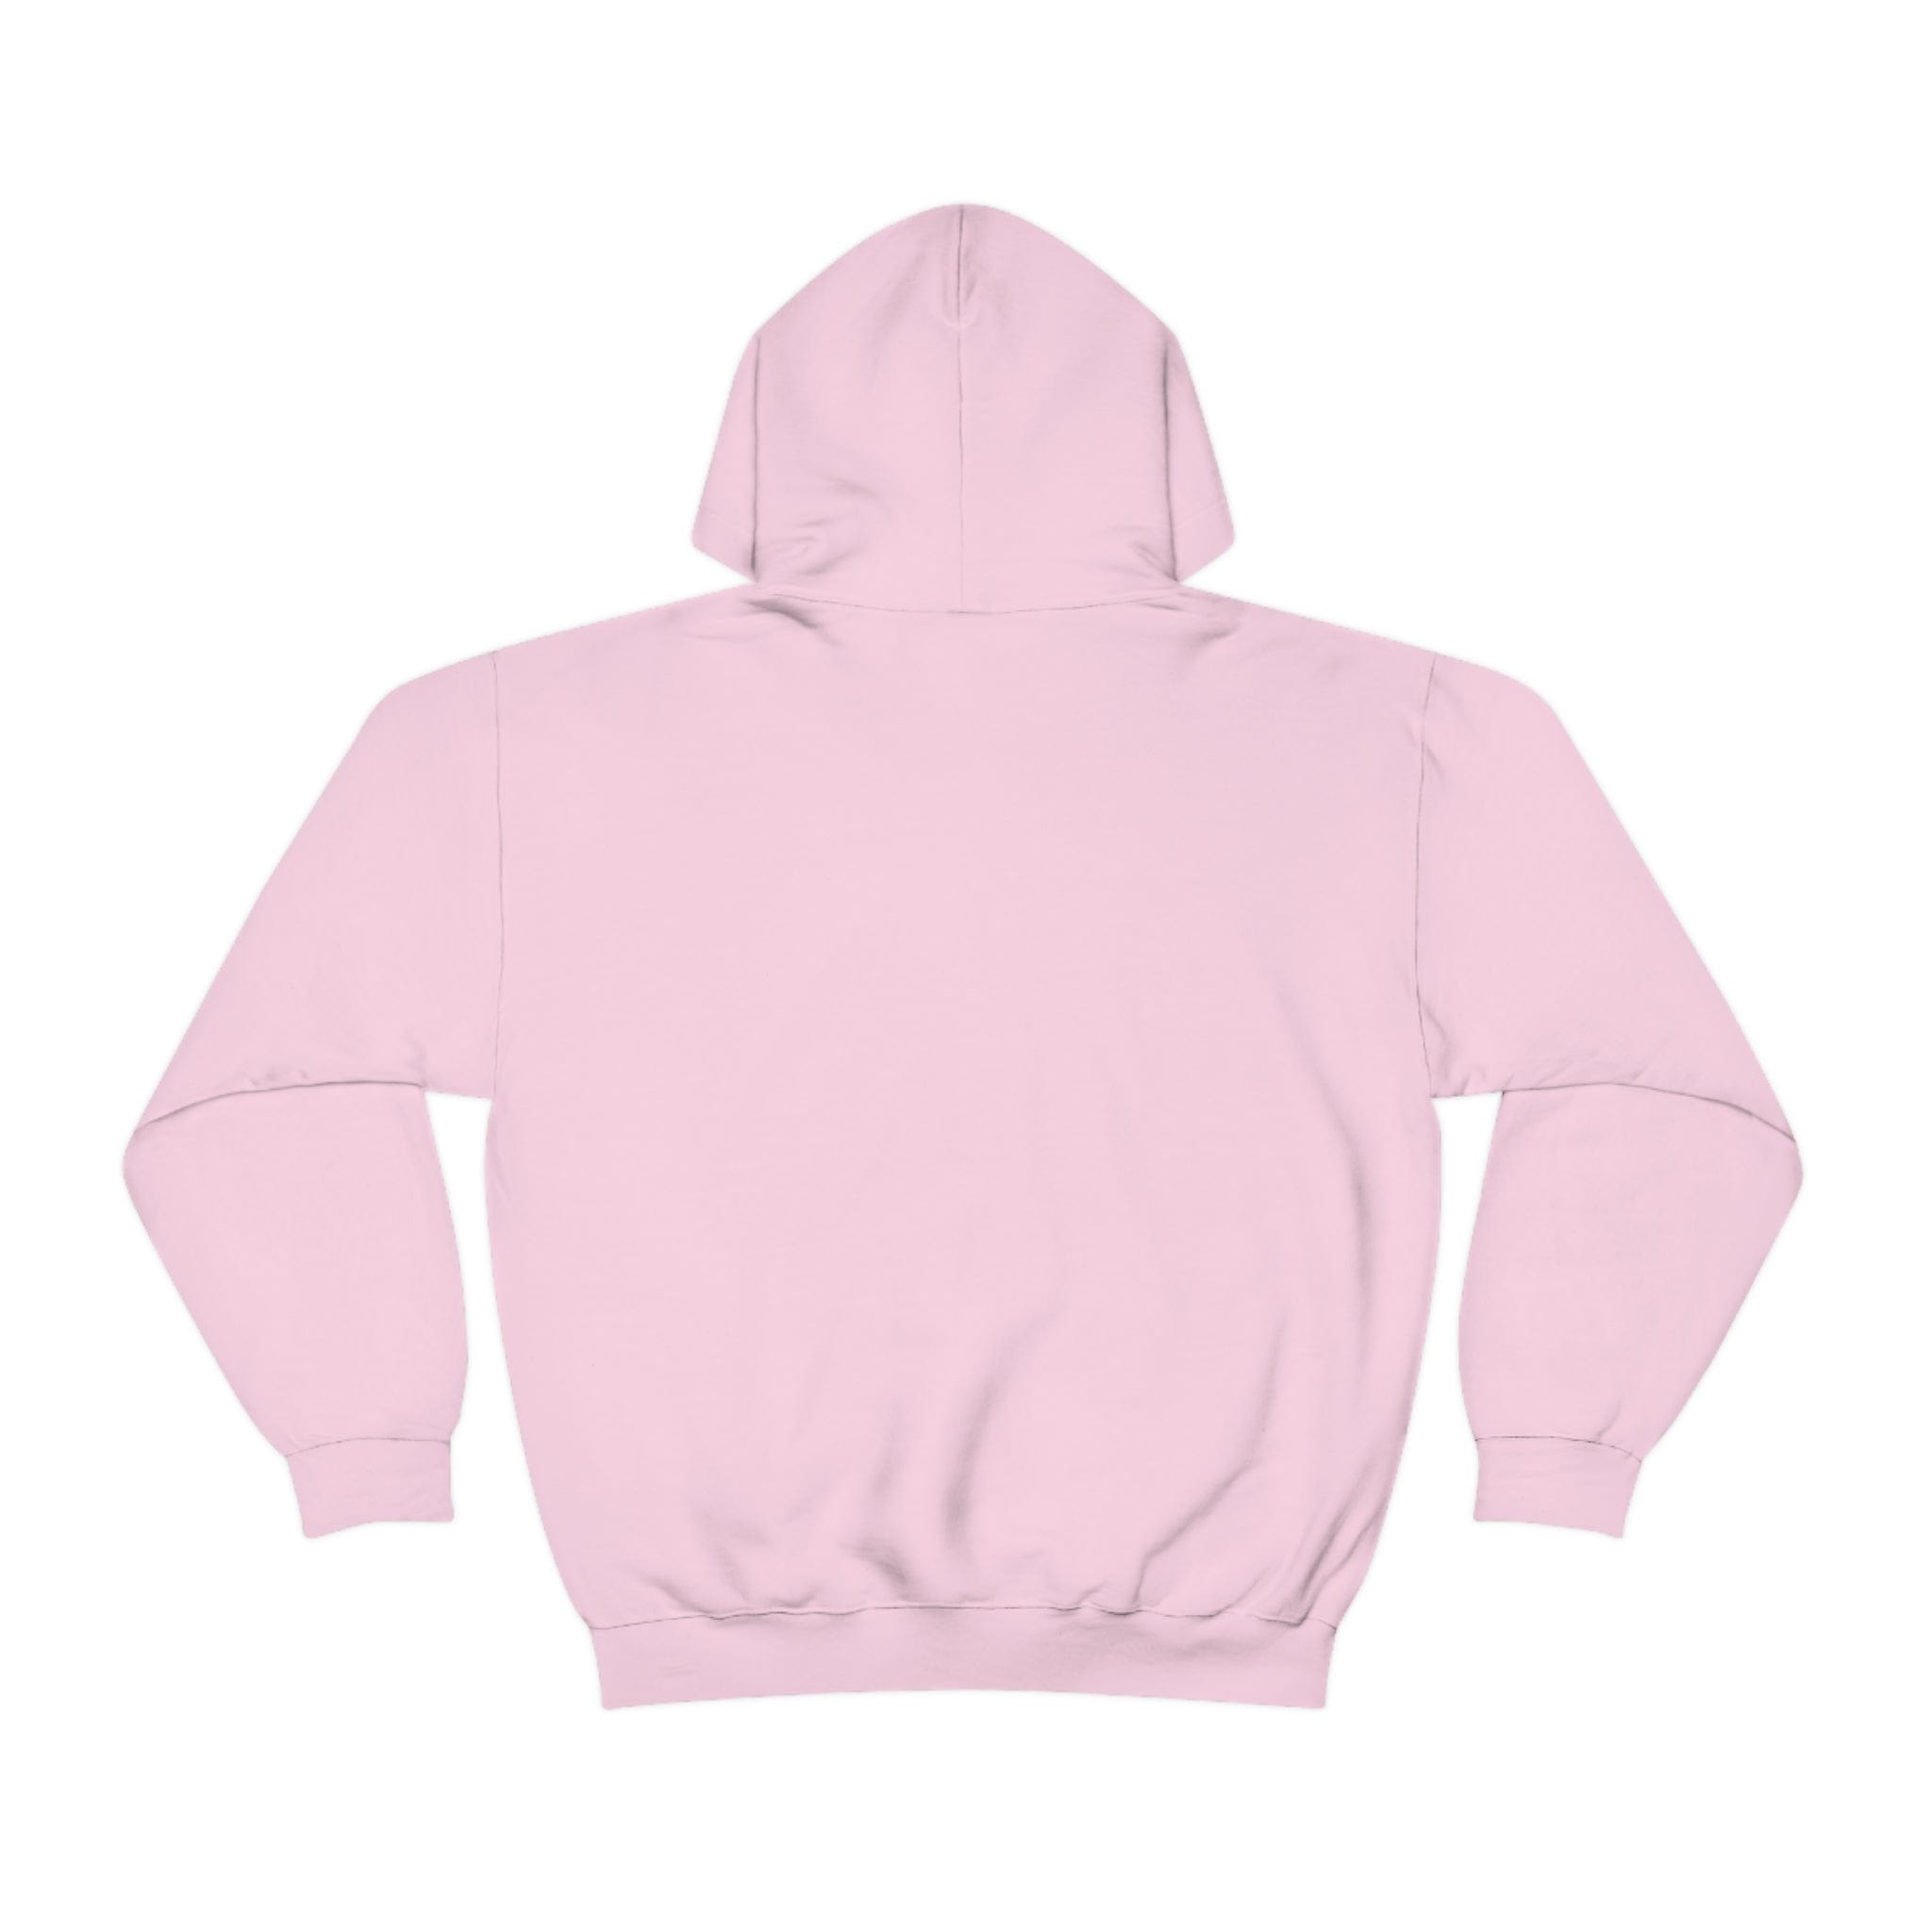 Printify Hoodie Home Sweet Nest - Heavy Blend™ Hooded Sweatshirt